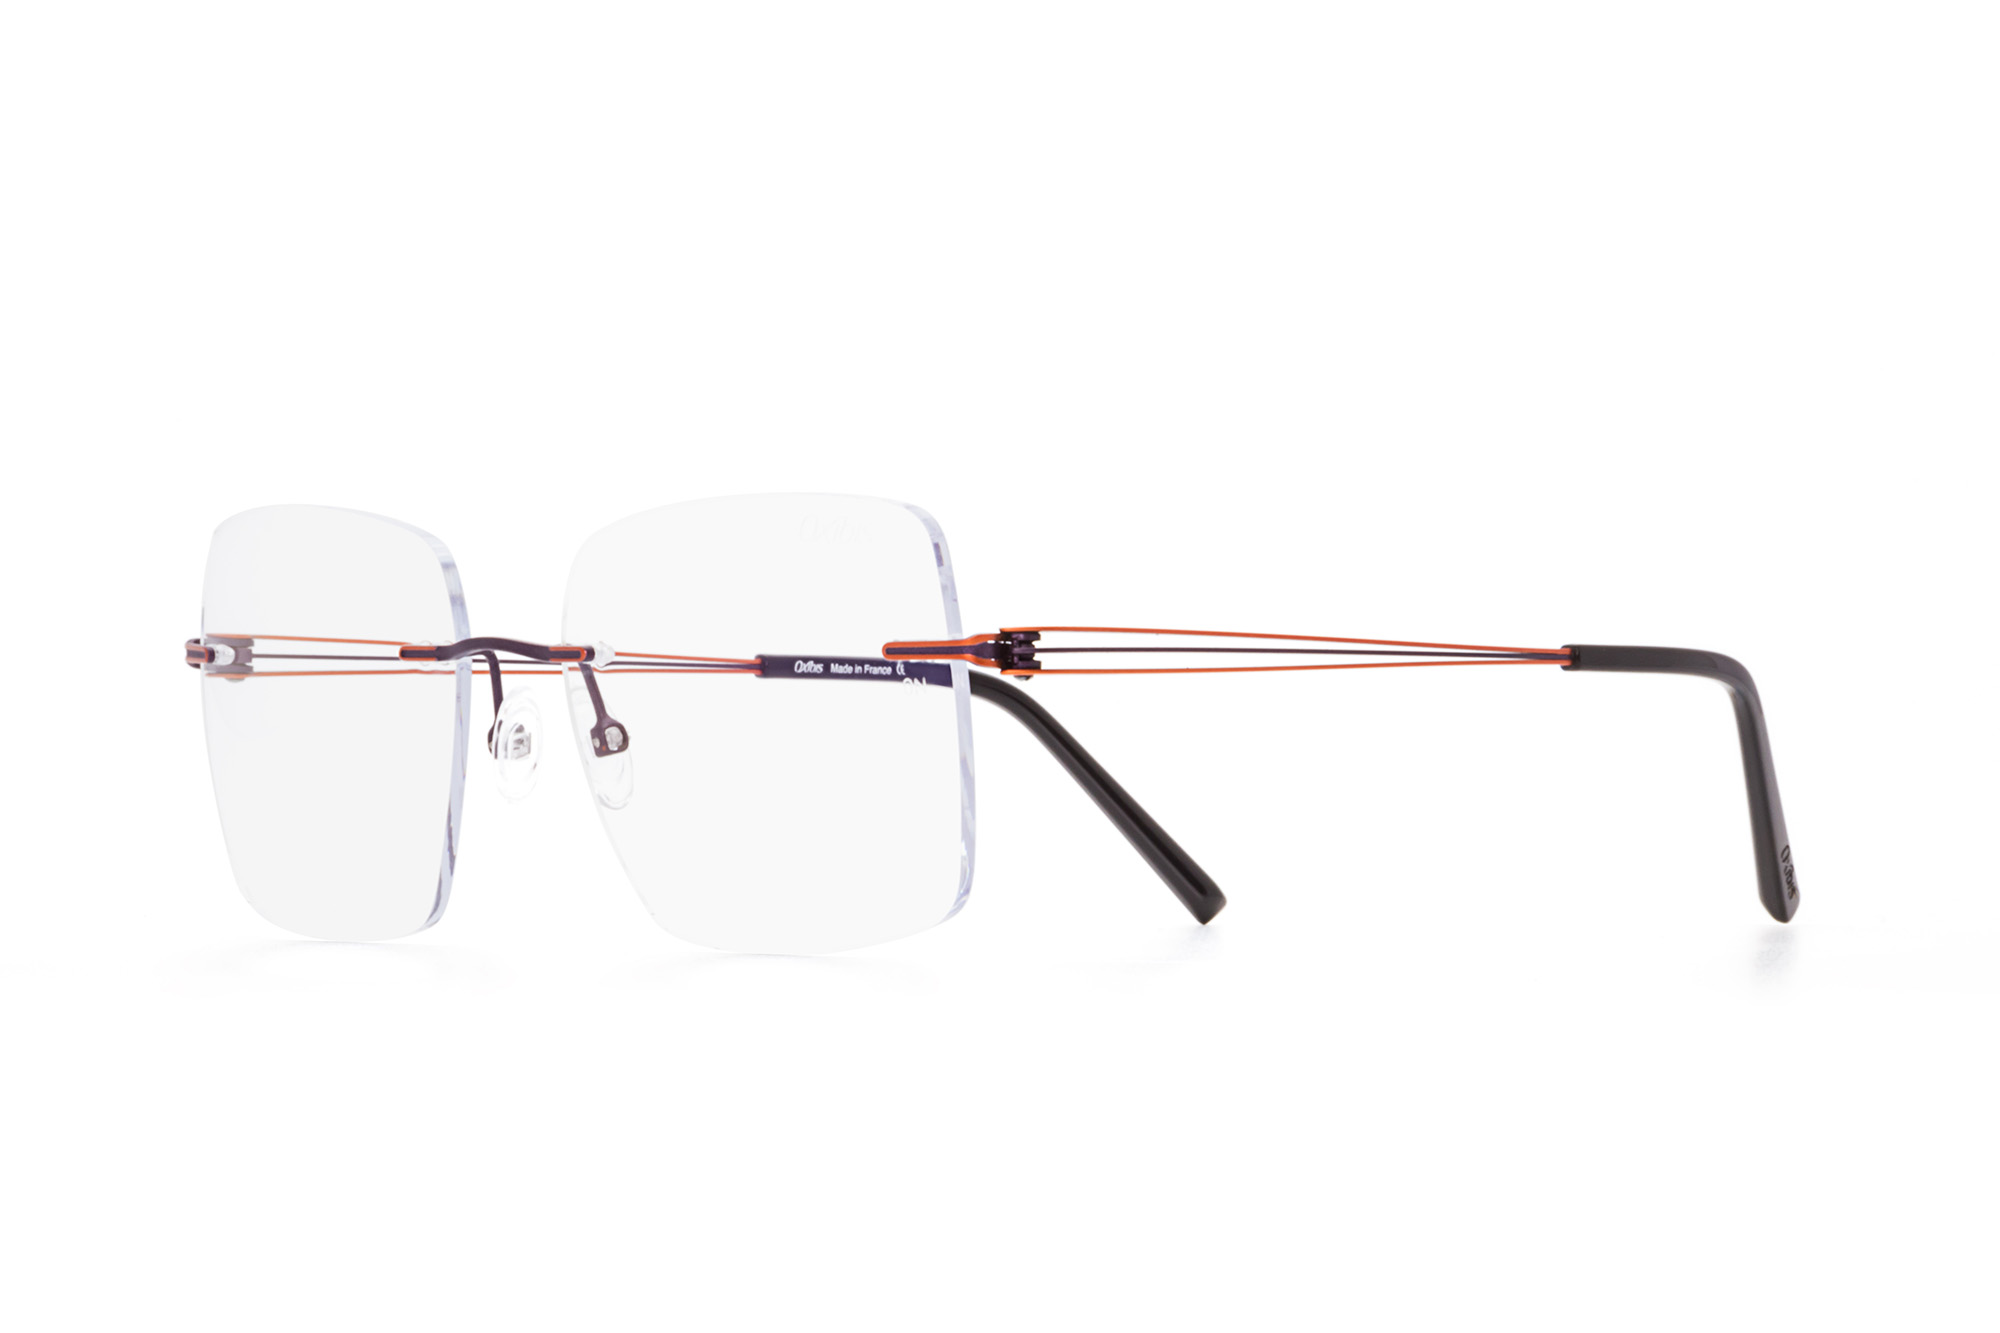 Kullanıma hazır optik tarzda işlenmiş camları ve optik uyumlu çerçevesiyle Oxibis Alyzee AZ6C5 53 orta ekartman mor ve turuncu renkli dikdörtgen model çerçevesiz kadın gözlüğünü optisyen veya gözlükçülerin sunacağı numarasız veya numaralı cam özelleştirmeleriyle size en yakın gözlükçüden satın alabilirsiniz.